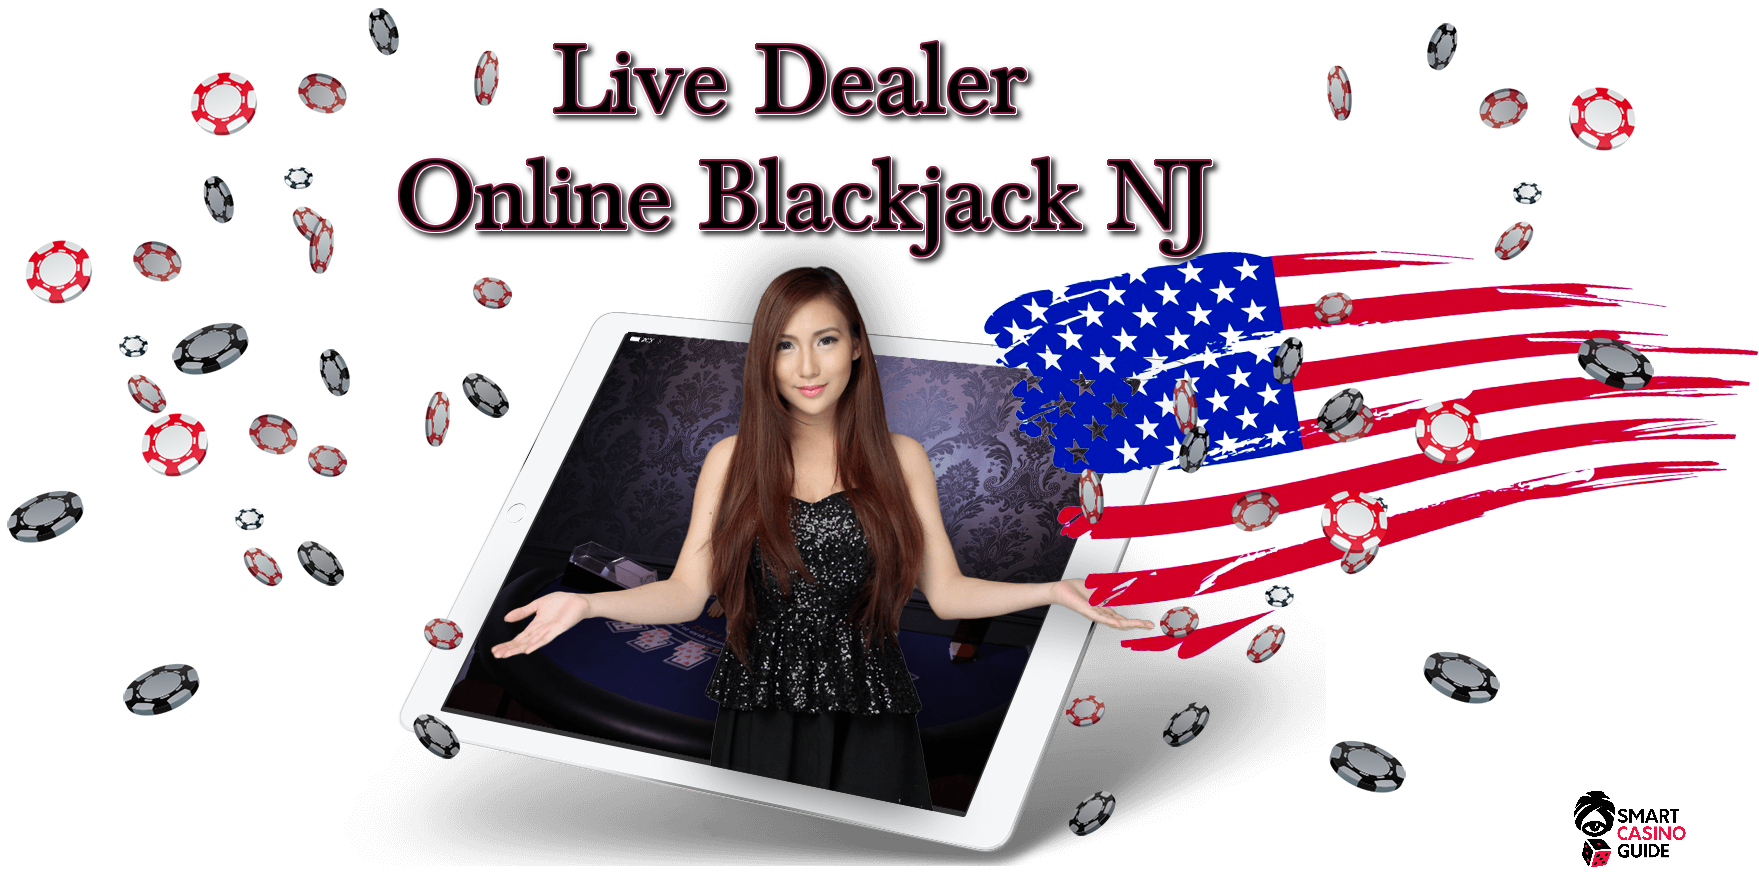 Live Dealer Online Blackjack Nj